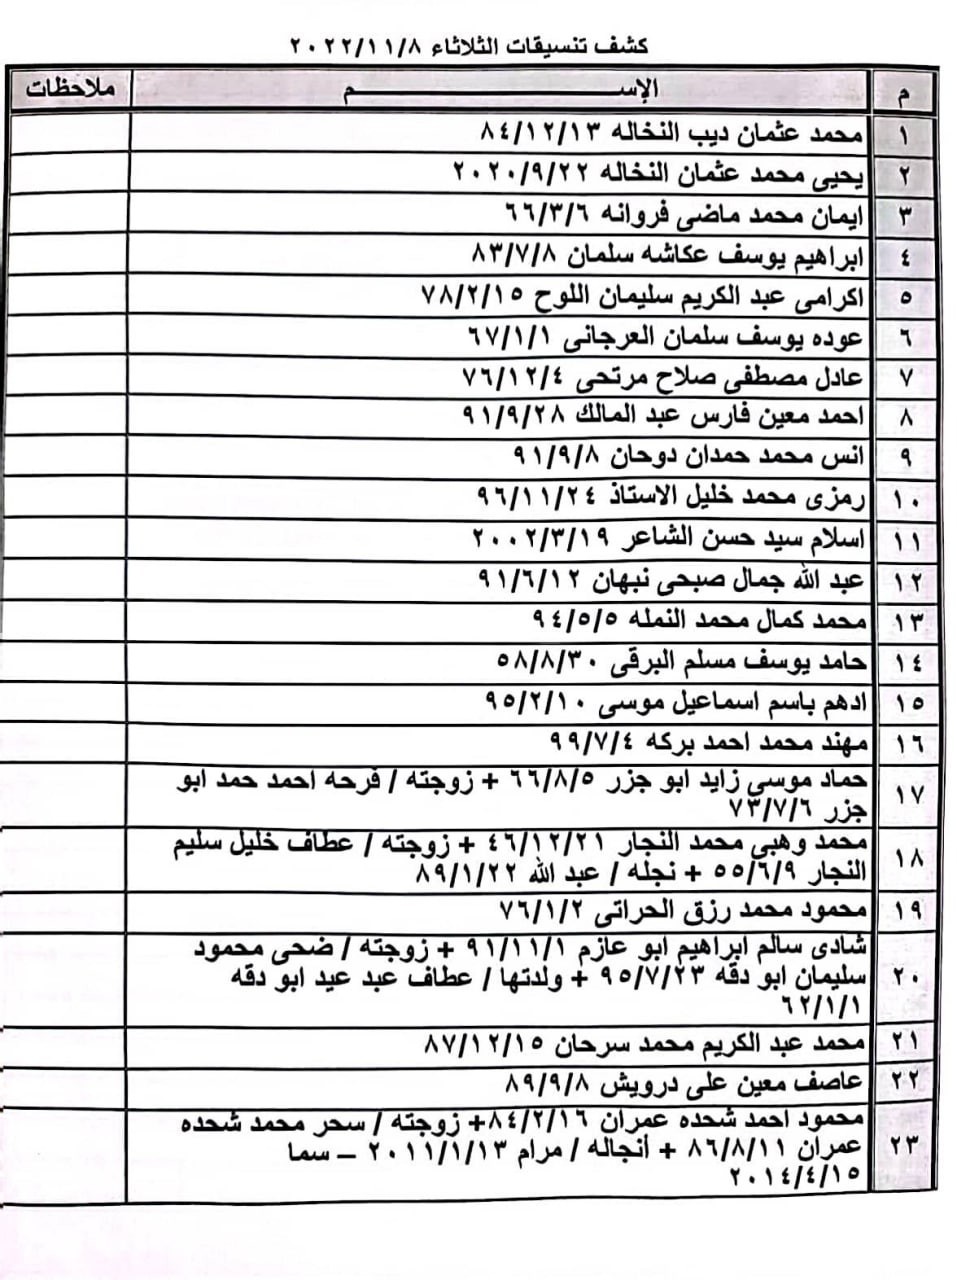 بالأسماء: كشف "تنسيقات مصرية" للسفر عبر معبر رفح يوم الثلاثاء 8 نوفمبر